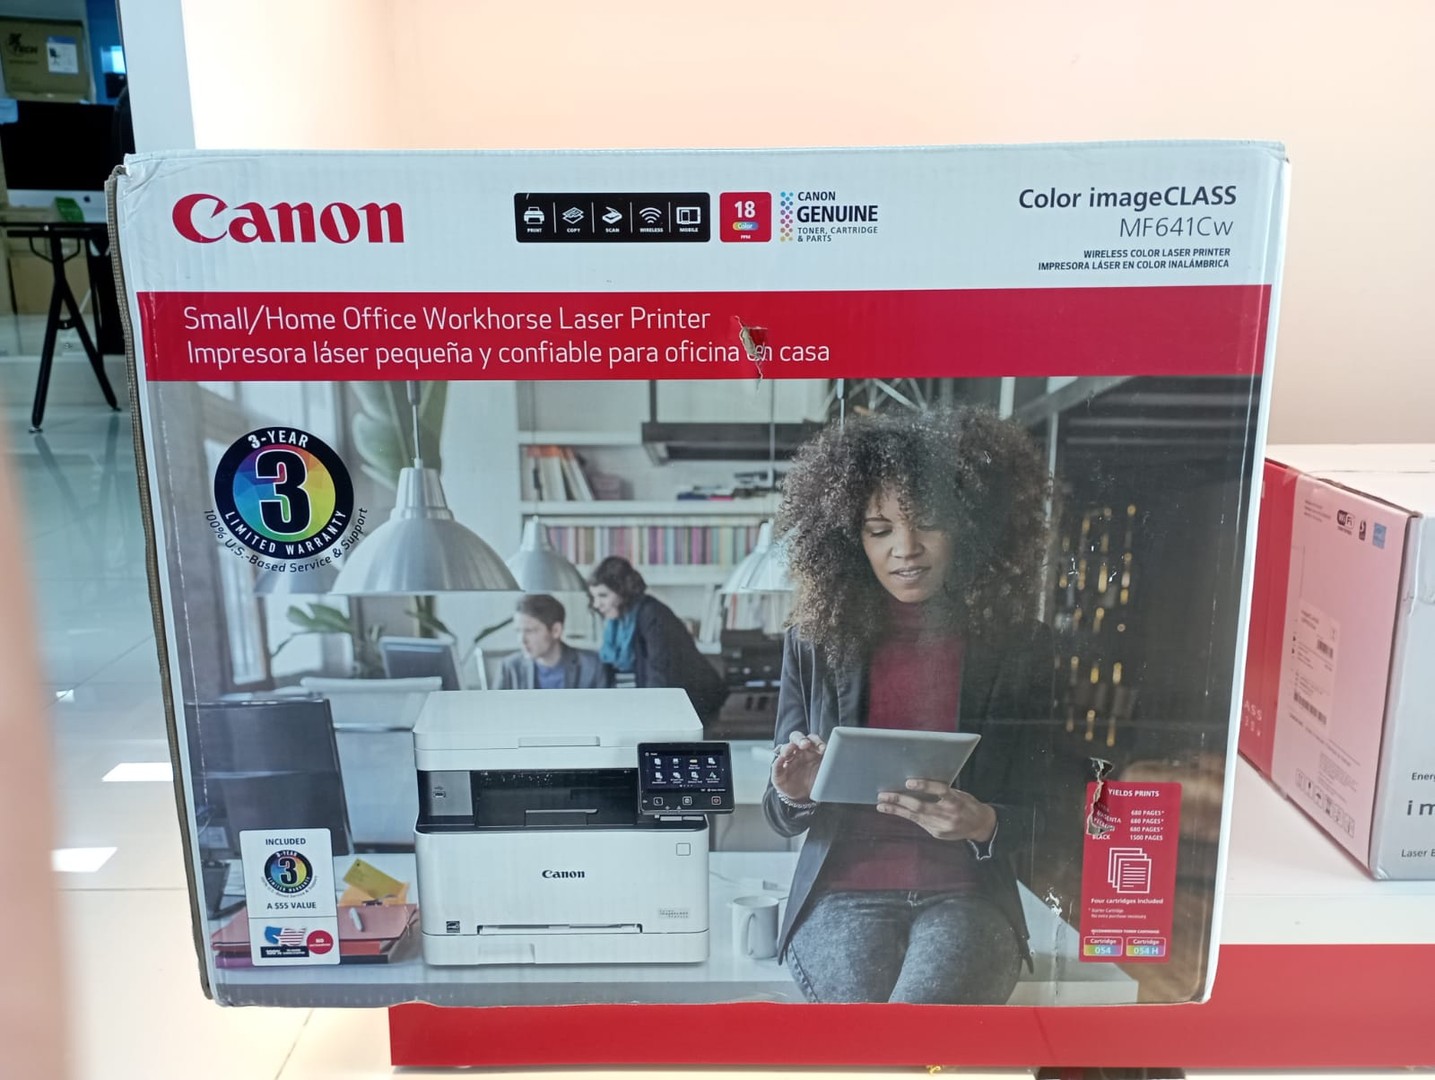 impresoras y scanners - Impresora Canon Laser color imagenclass MF641CW multifuncional 0